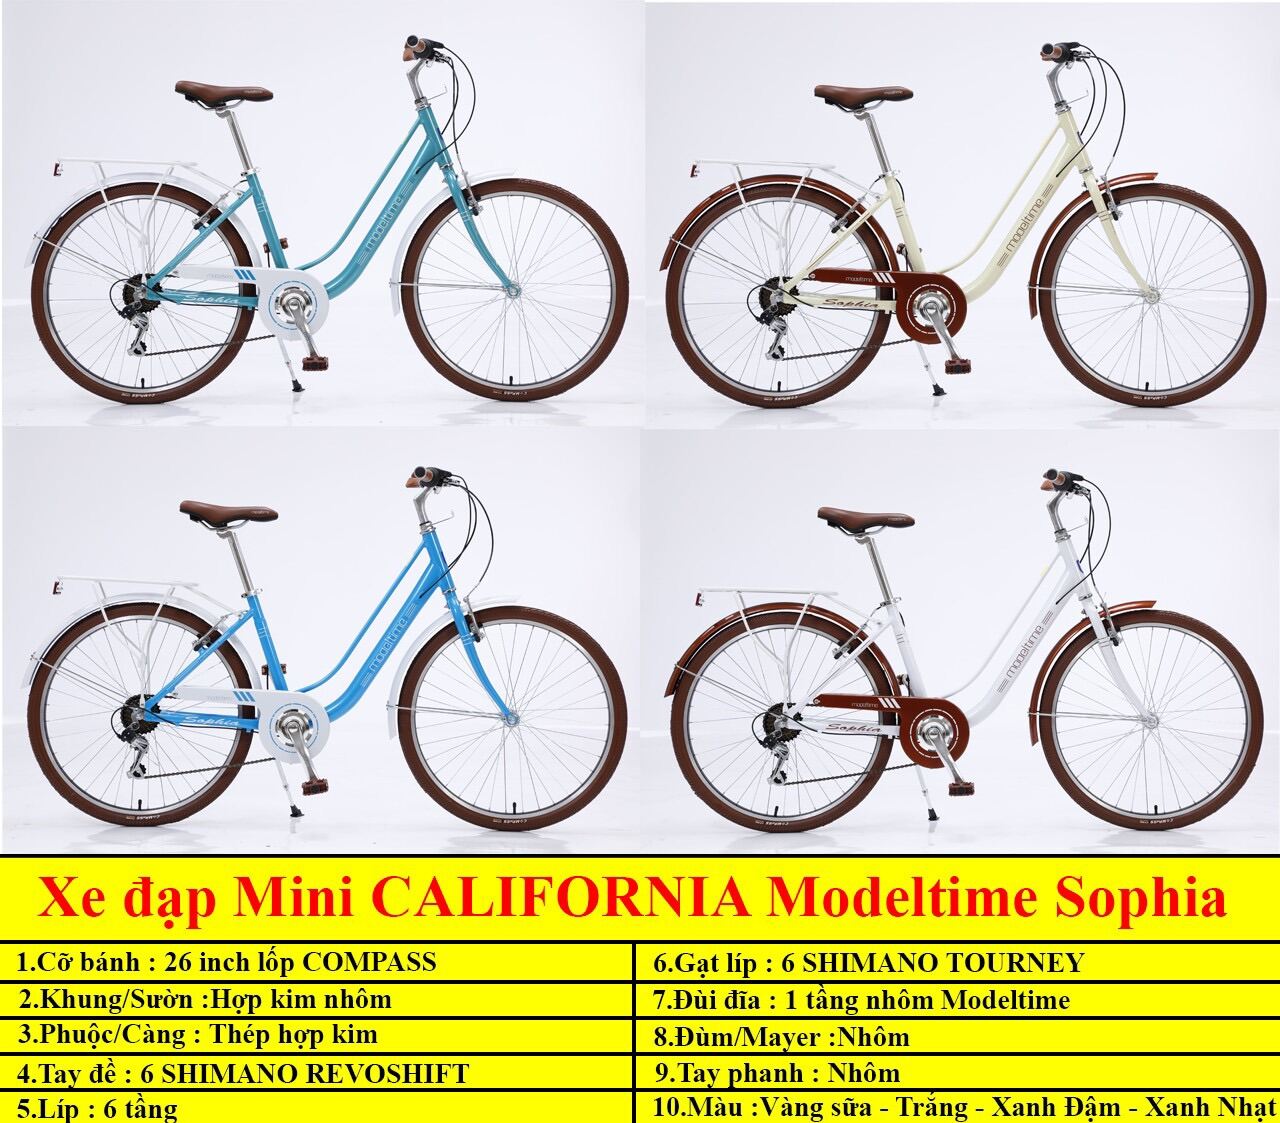 Xe đạp Modeltime Sophia khung nhôm bộ chuyển động Shimano